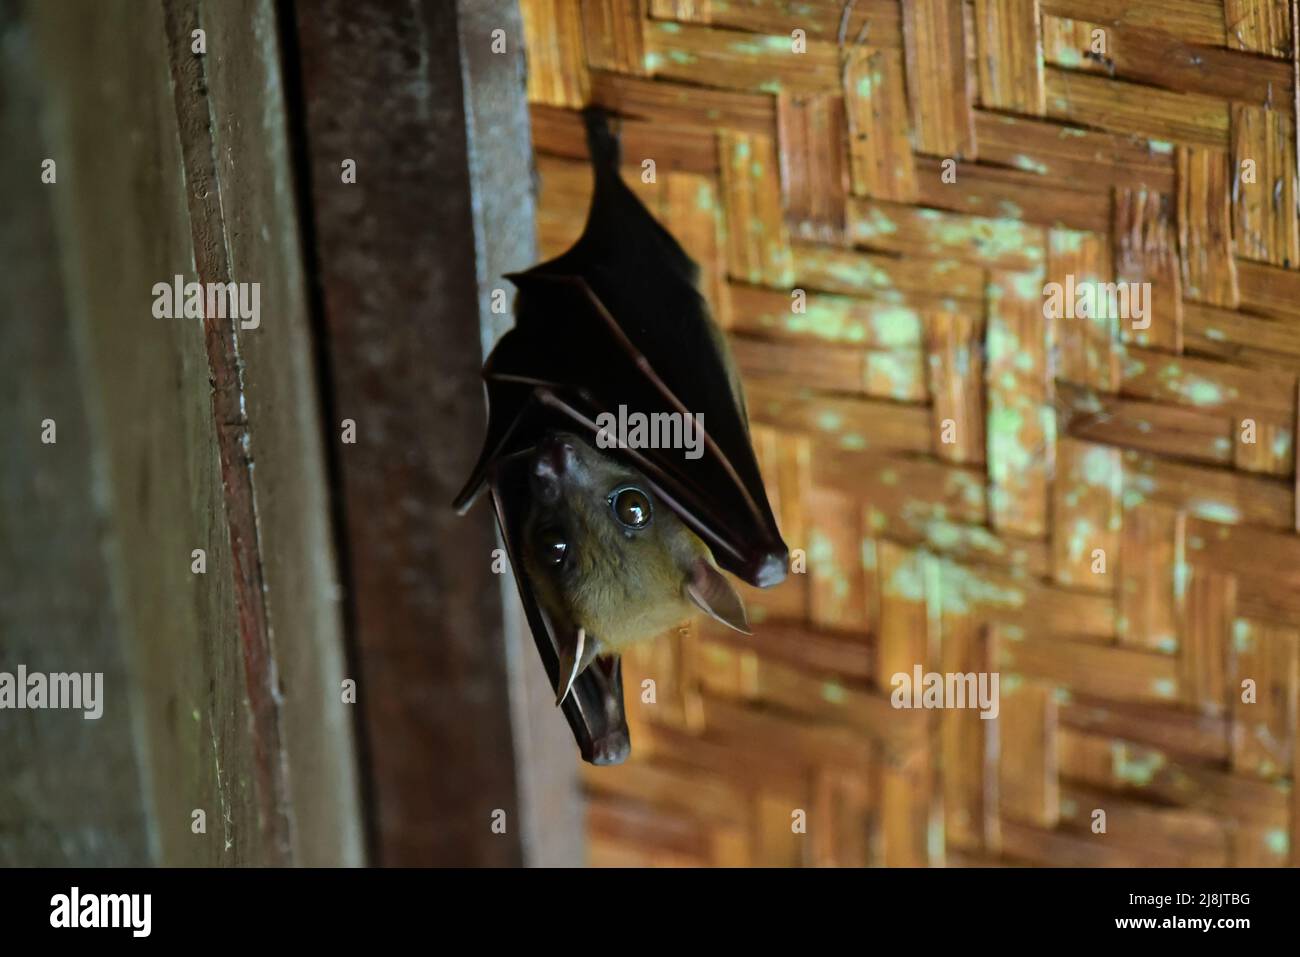 Enraizamiento de Bat (Cynopterus brachyotis), Taman Negara, Malasia Foto de stock